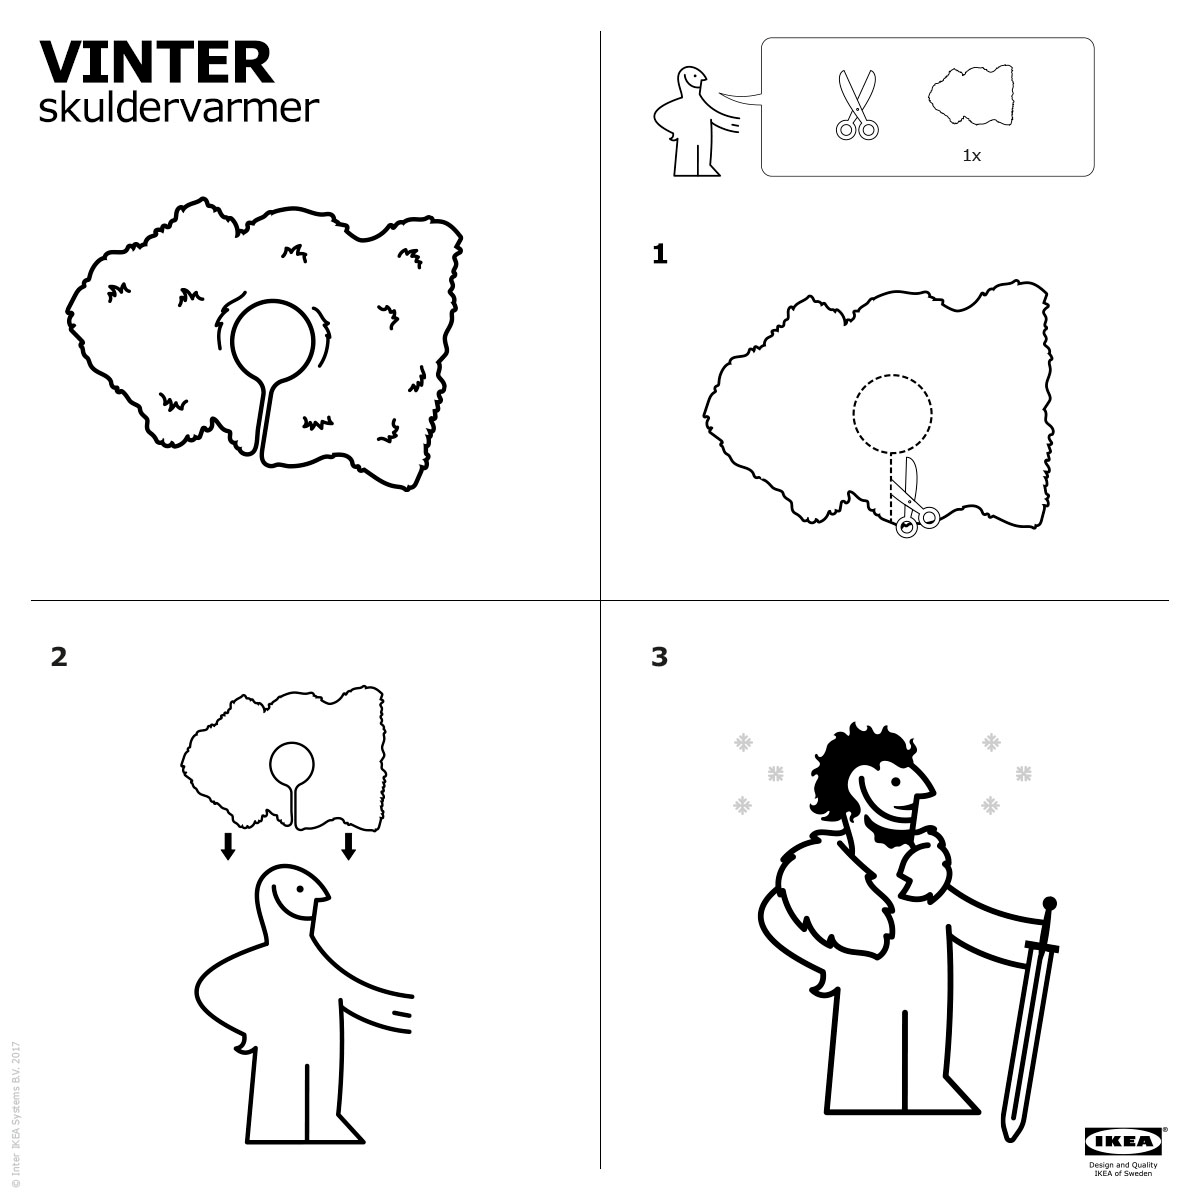 IKEA - VINTER skuldervarmer.png